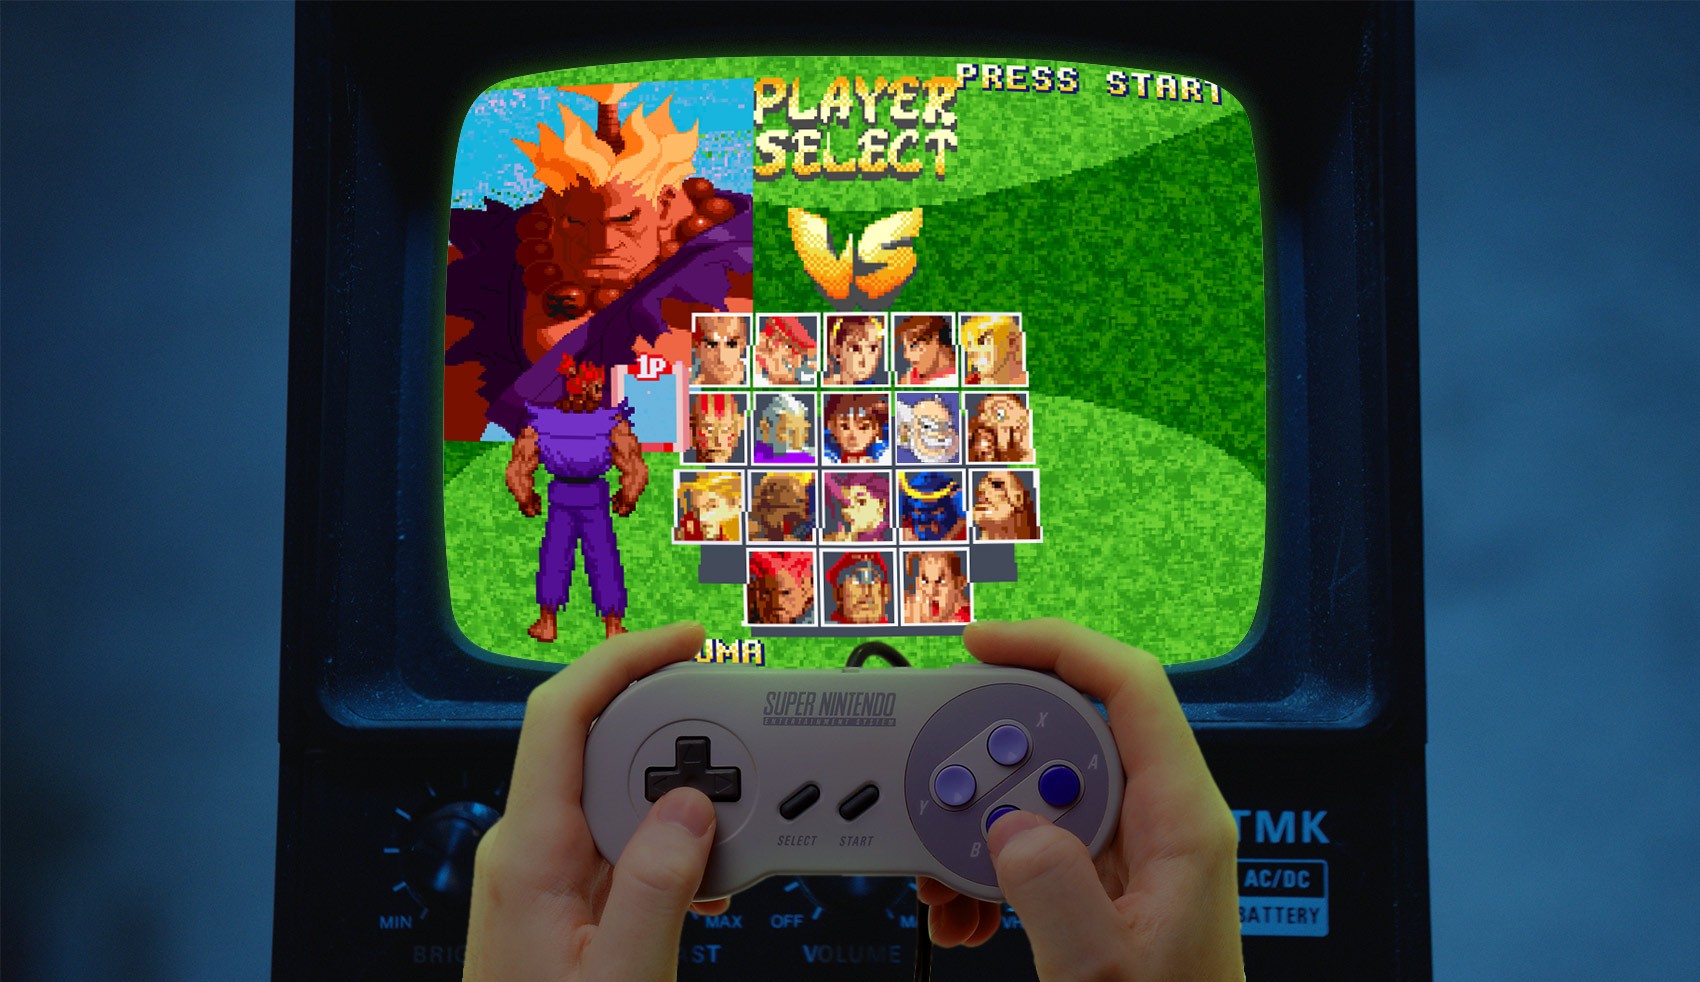 Street Fighter Alpha 2: Jogador descobre segredo na versão de SNES